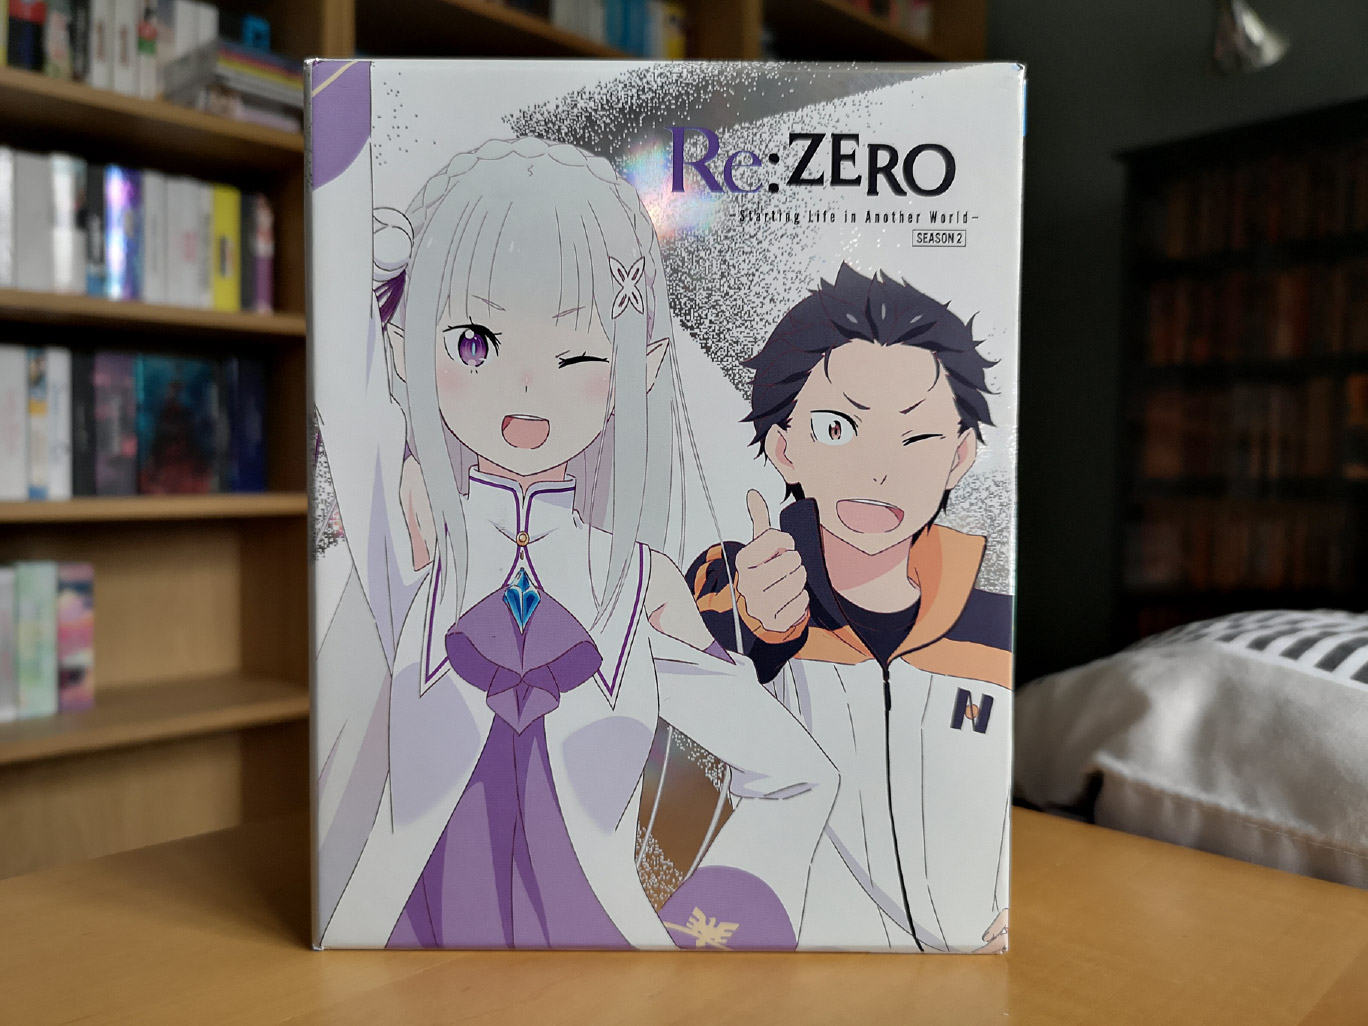 Re:Zero kara Hajimeru Isekai Seikatsu 1 & 2nd Season Part 2